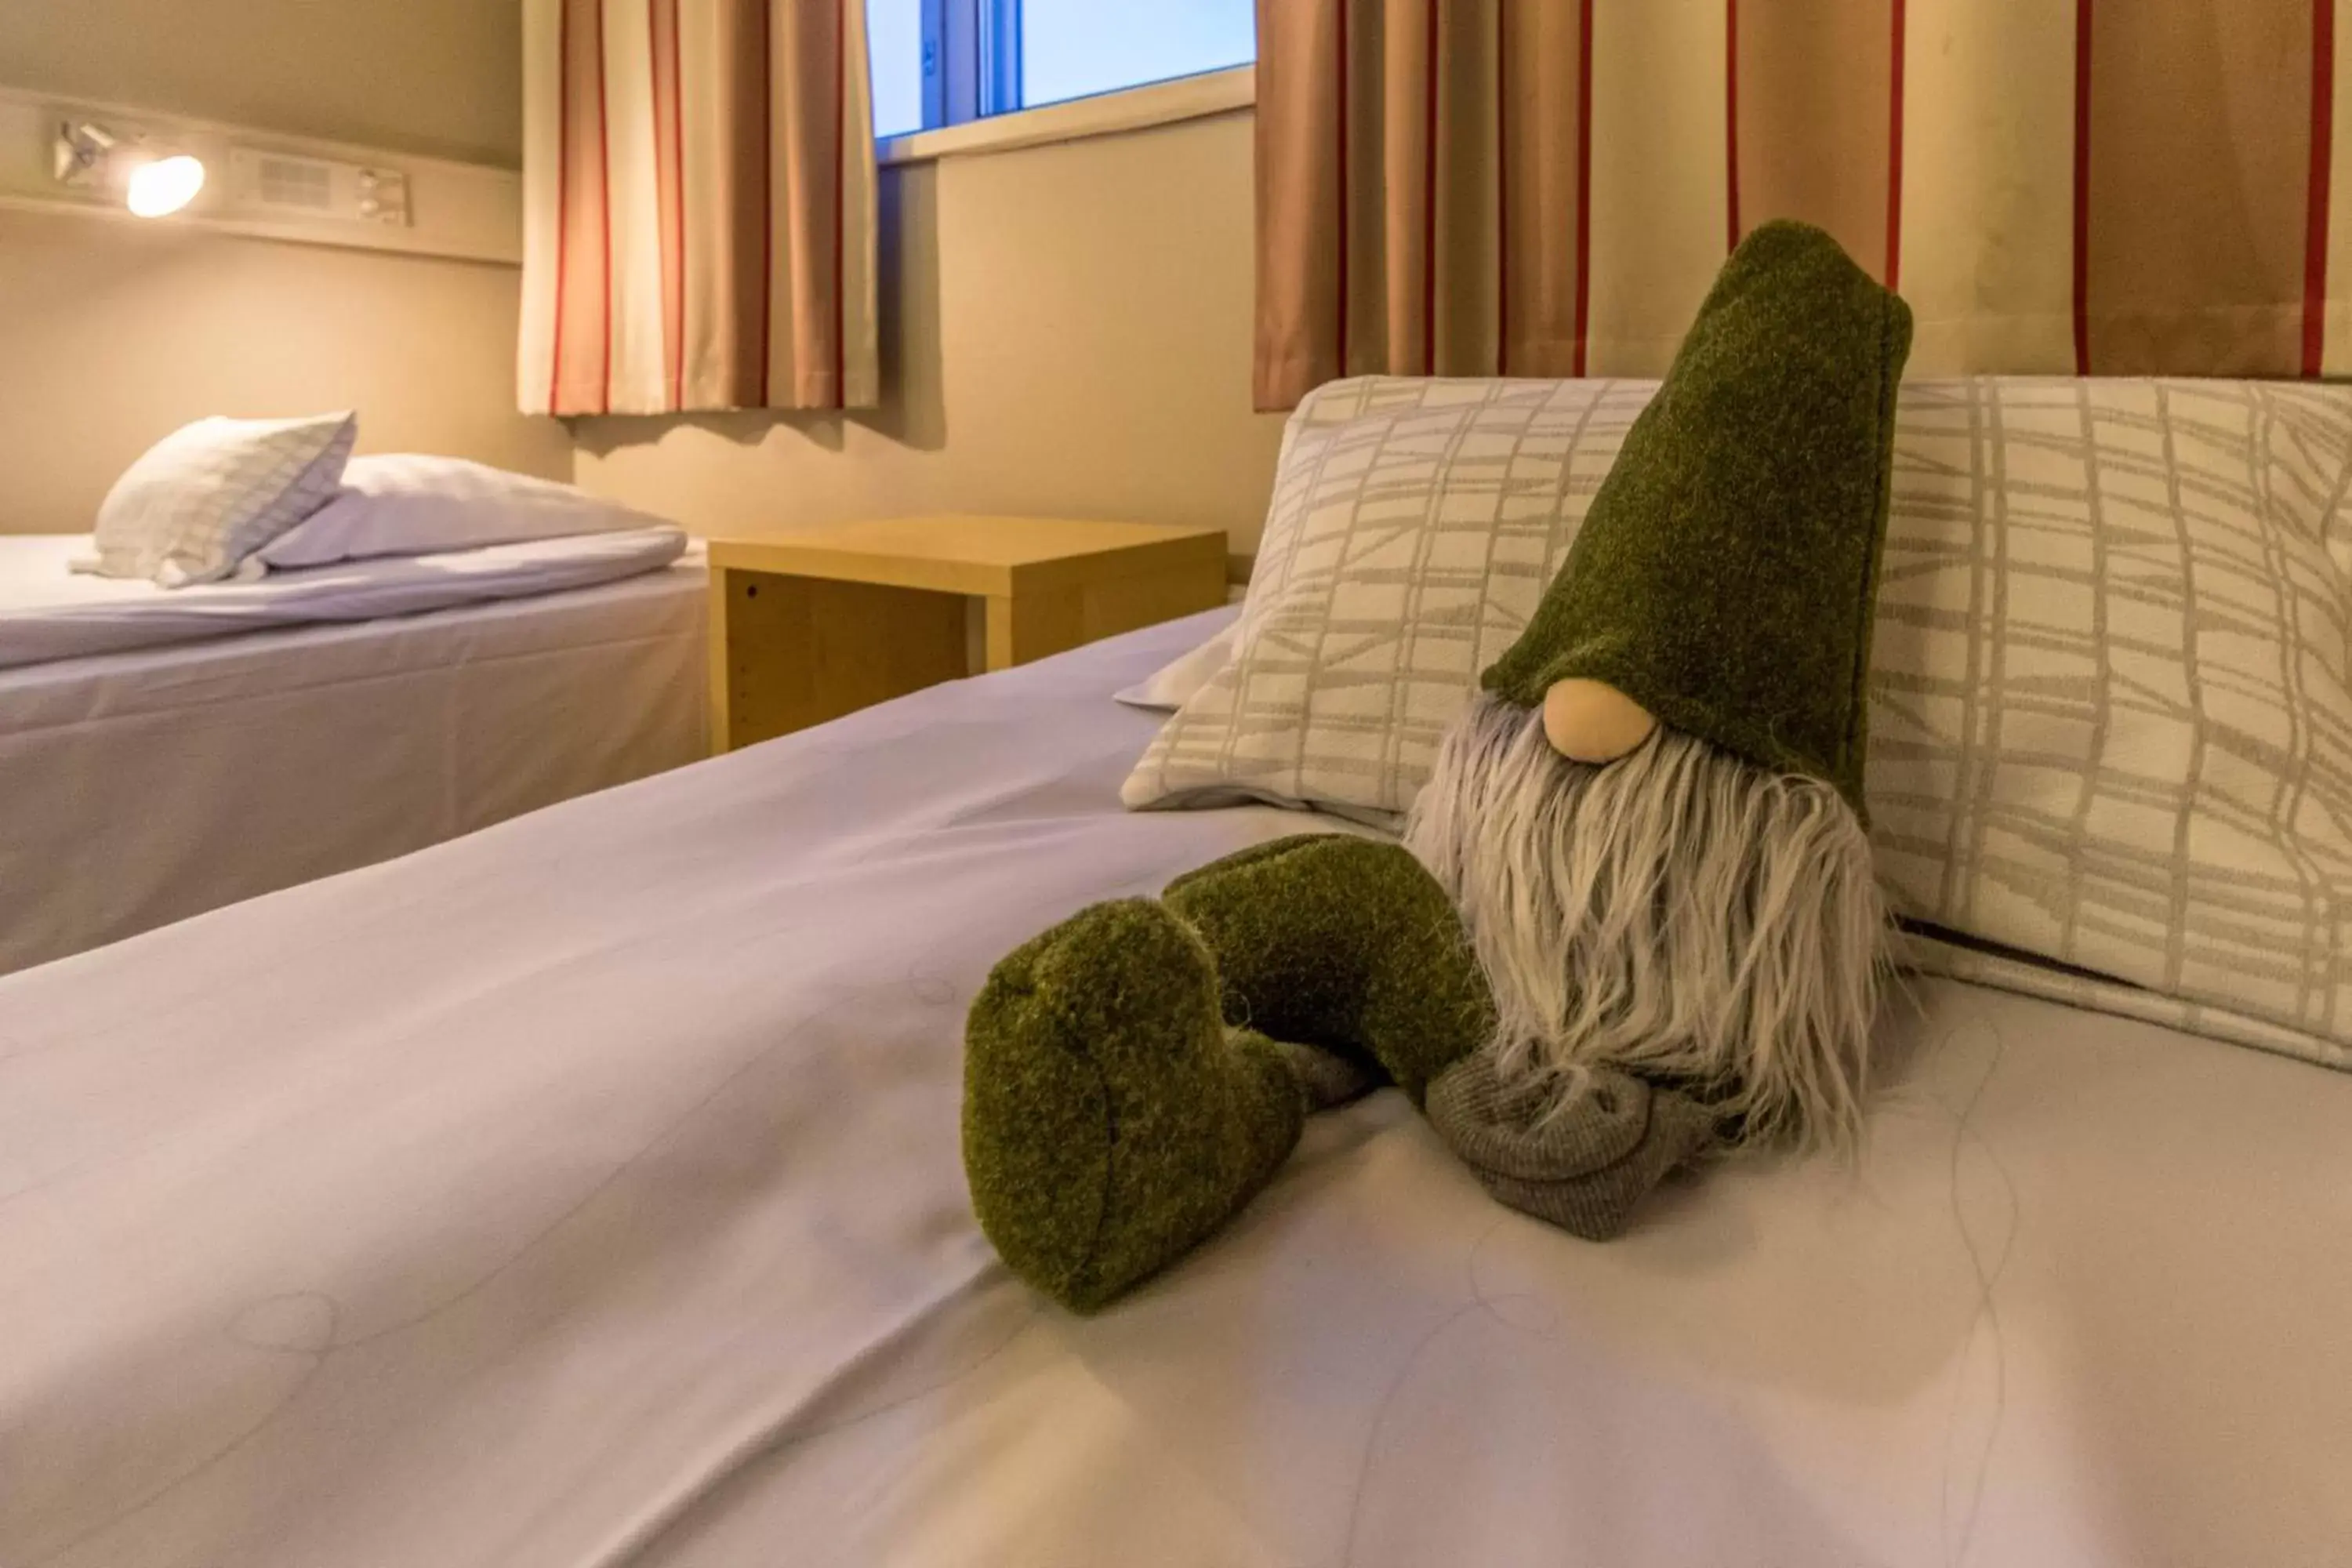 Bed in Santa's Hotel Rudolf